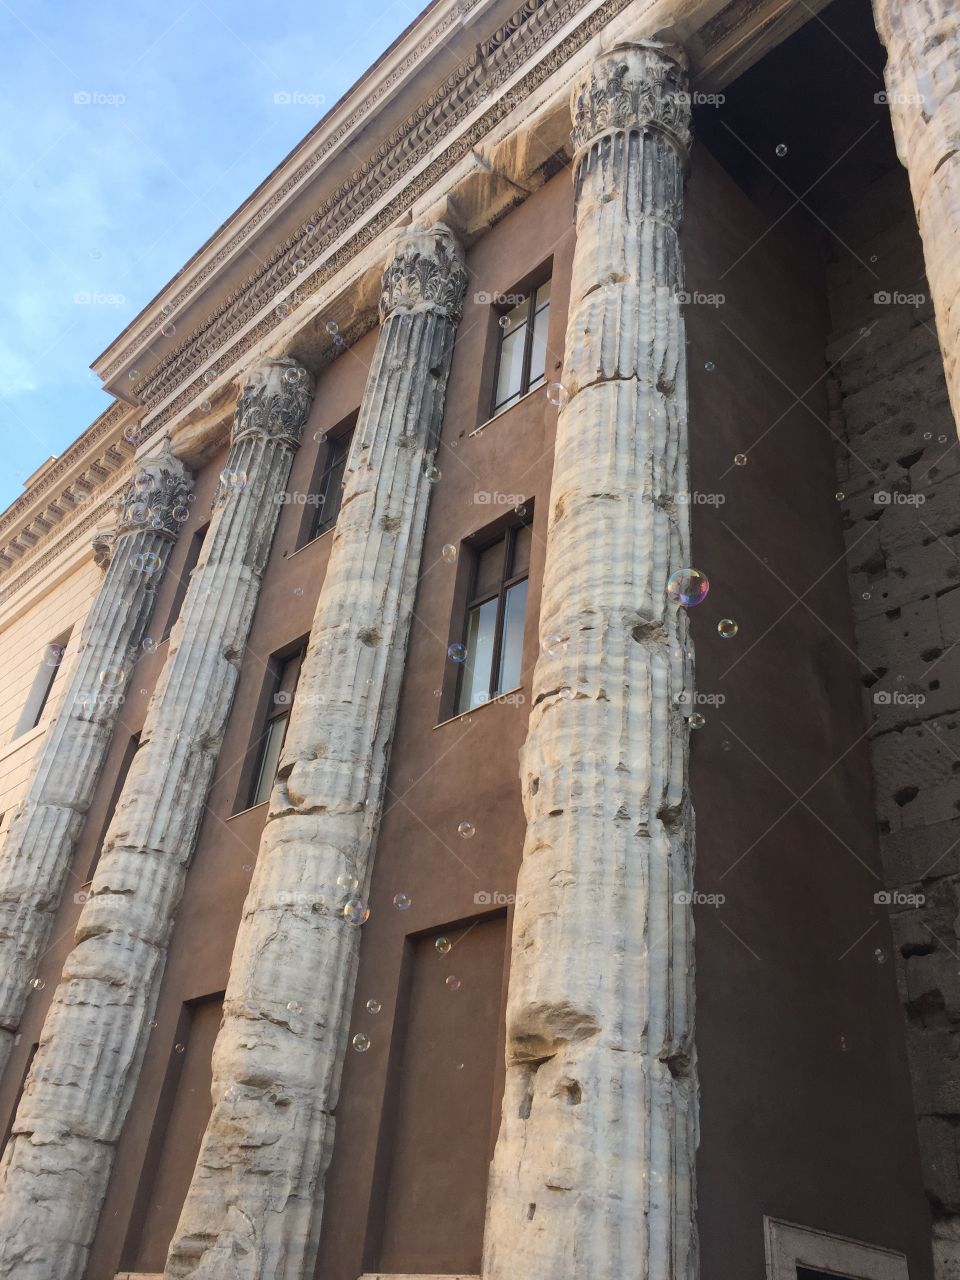 Bubbles on buildings 